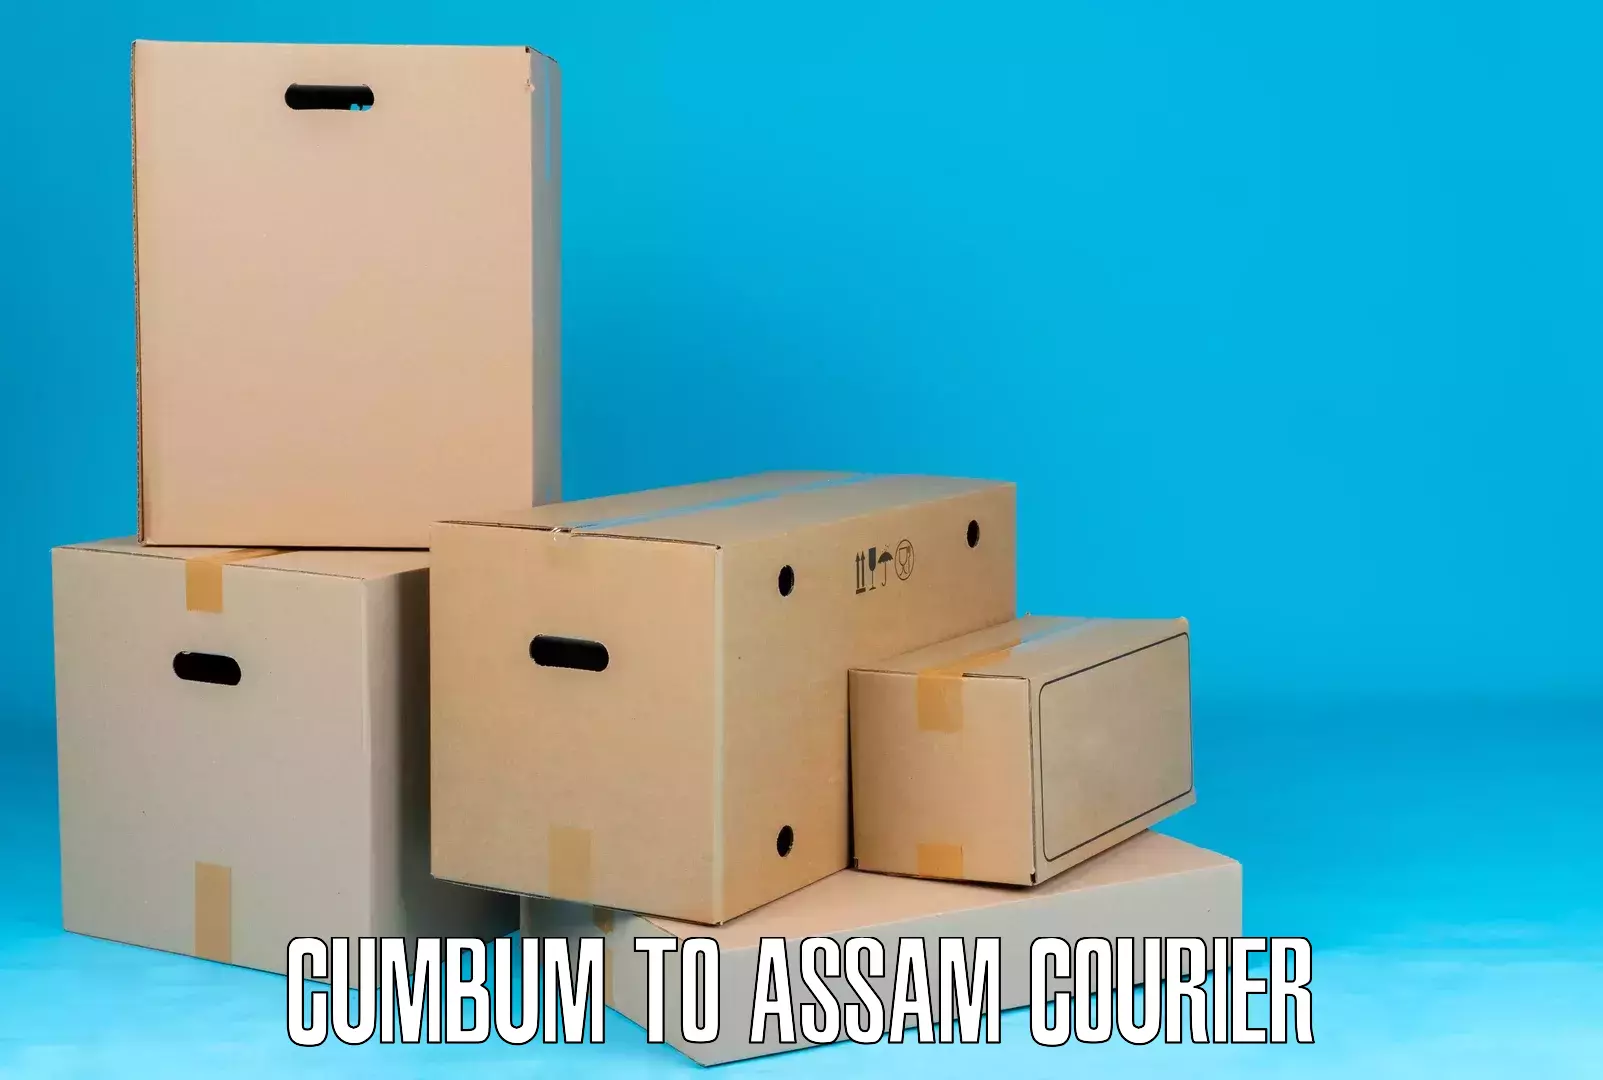 Full-service courier options Cumbum to Udalguri